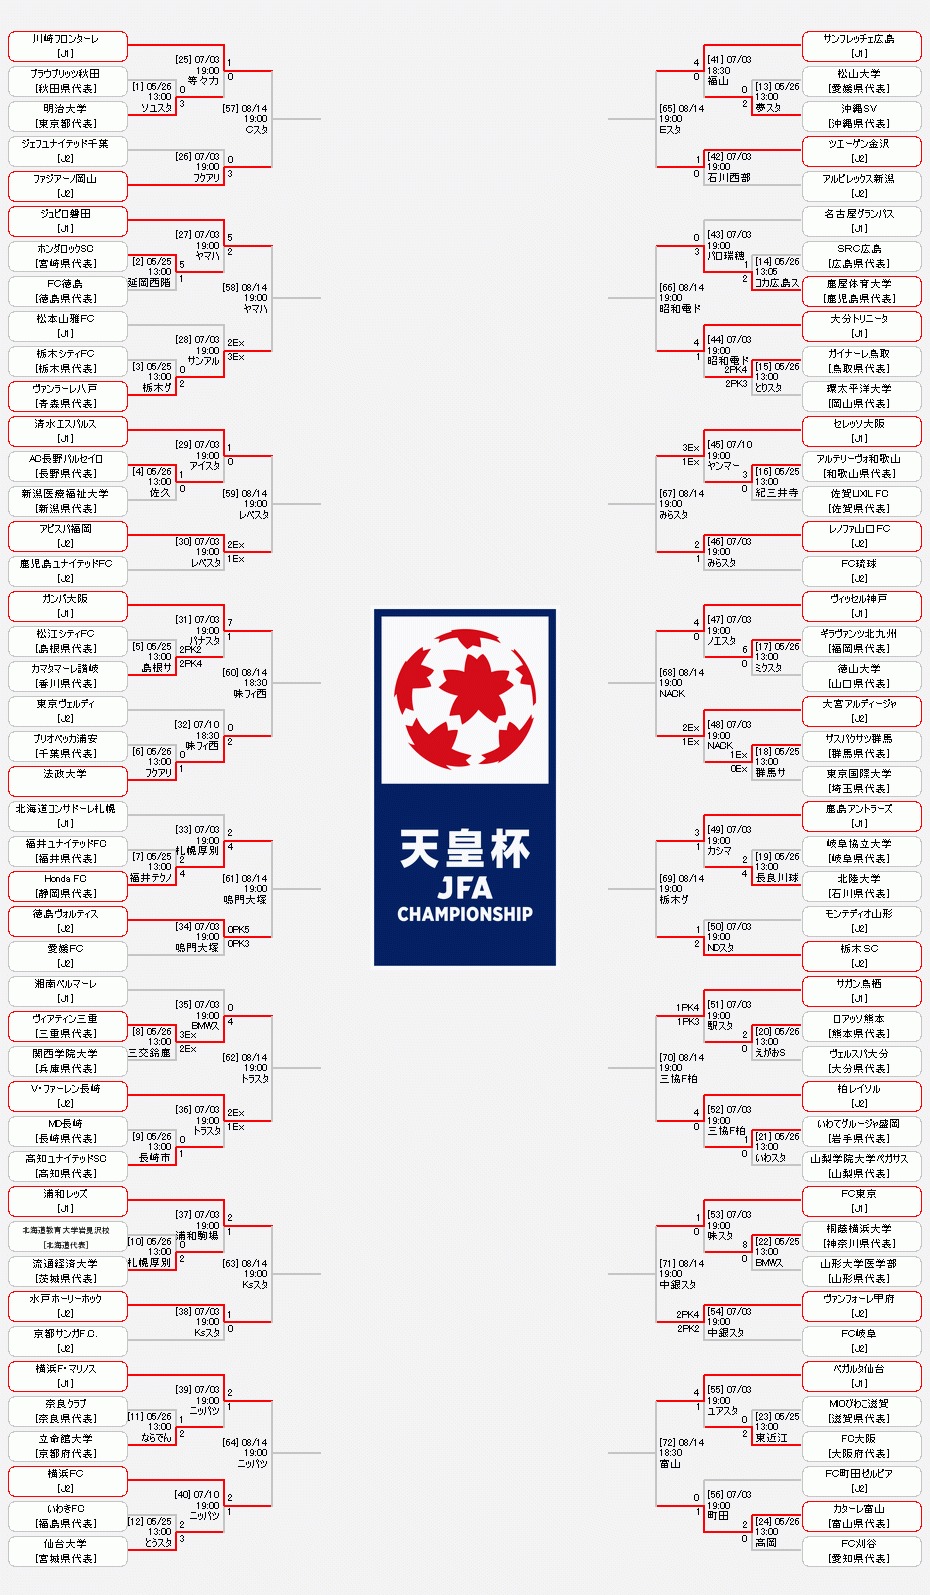 『天皇杯 JFA 第99回全日本サッカー選手権大会』の組み合わせ